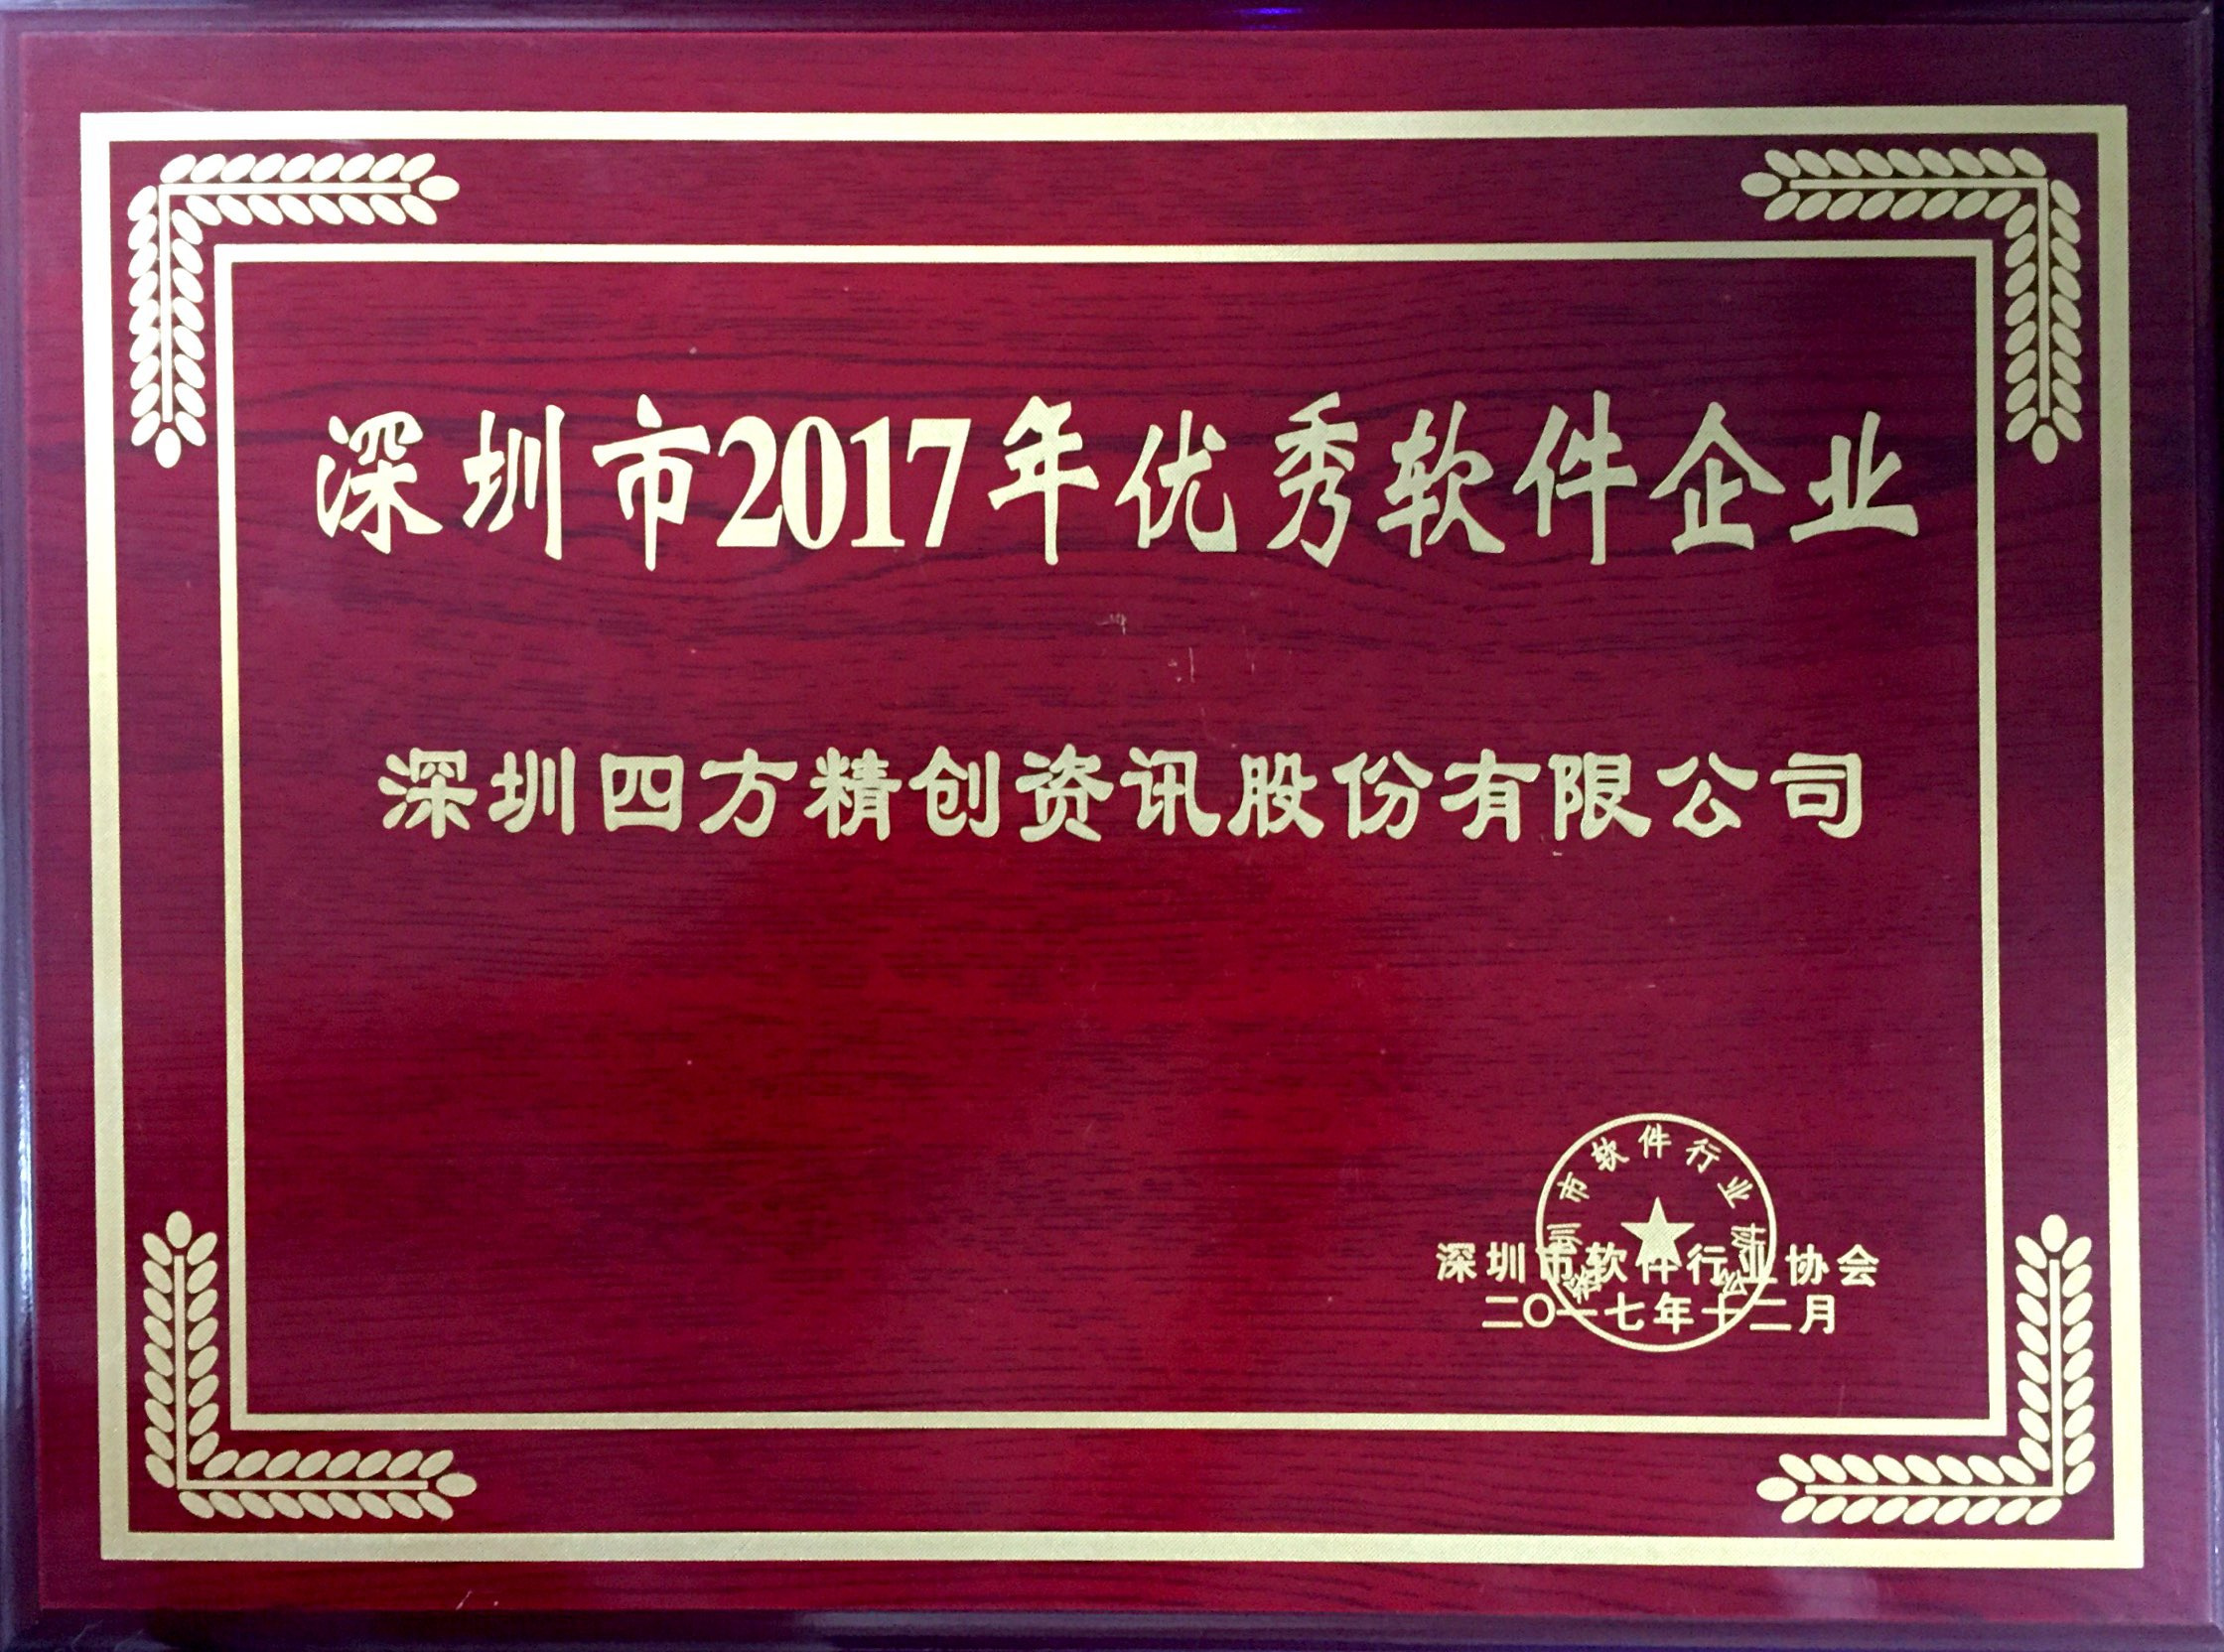 新建文件夹-荣誉-深圳市优秀软件企业2017年度